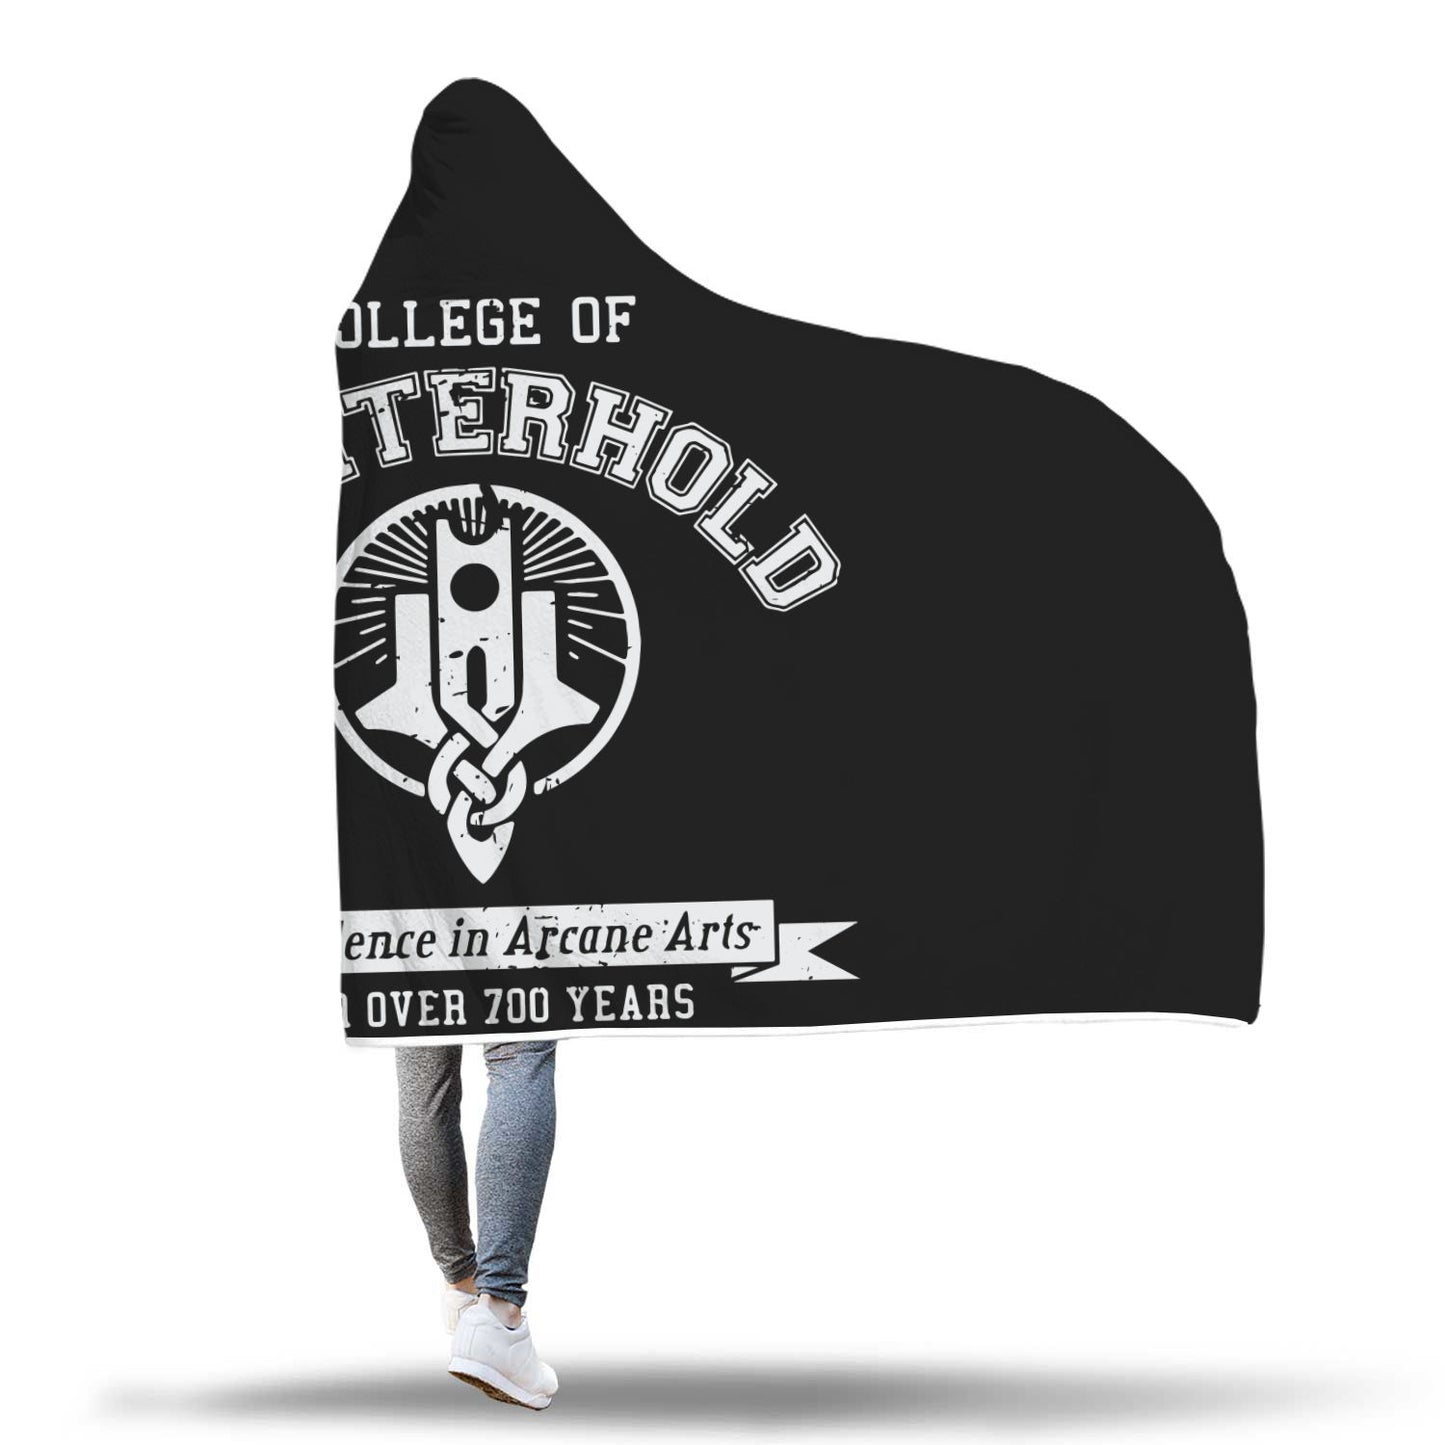 College of Winterhold Hooded Blanket